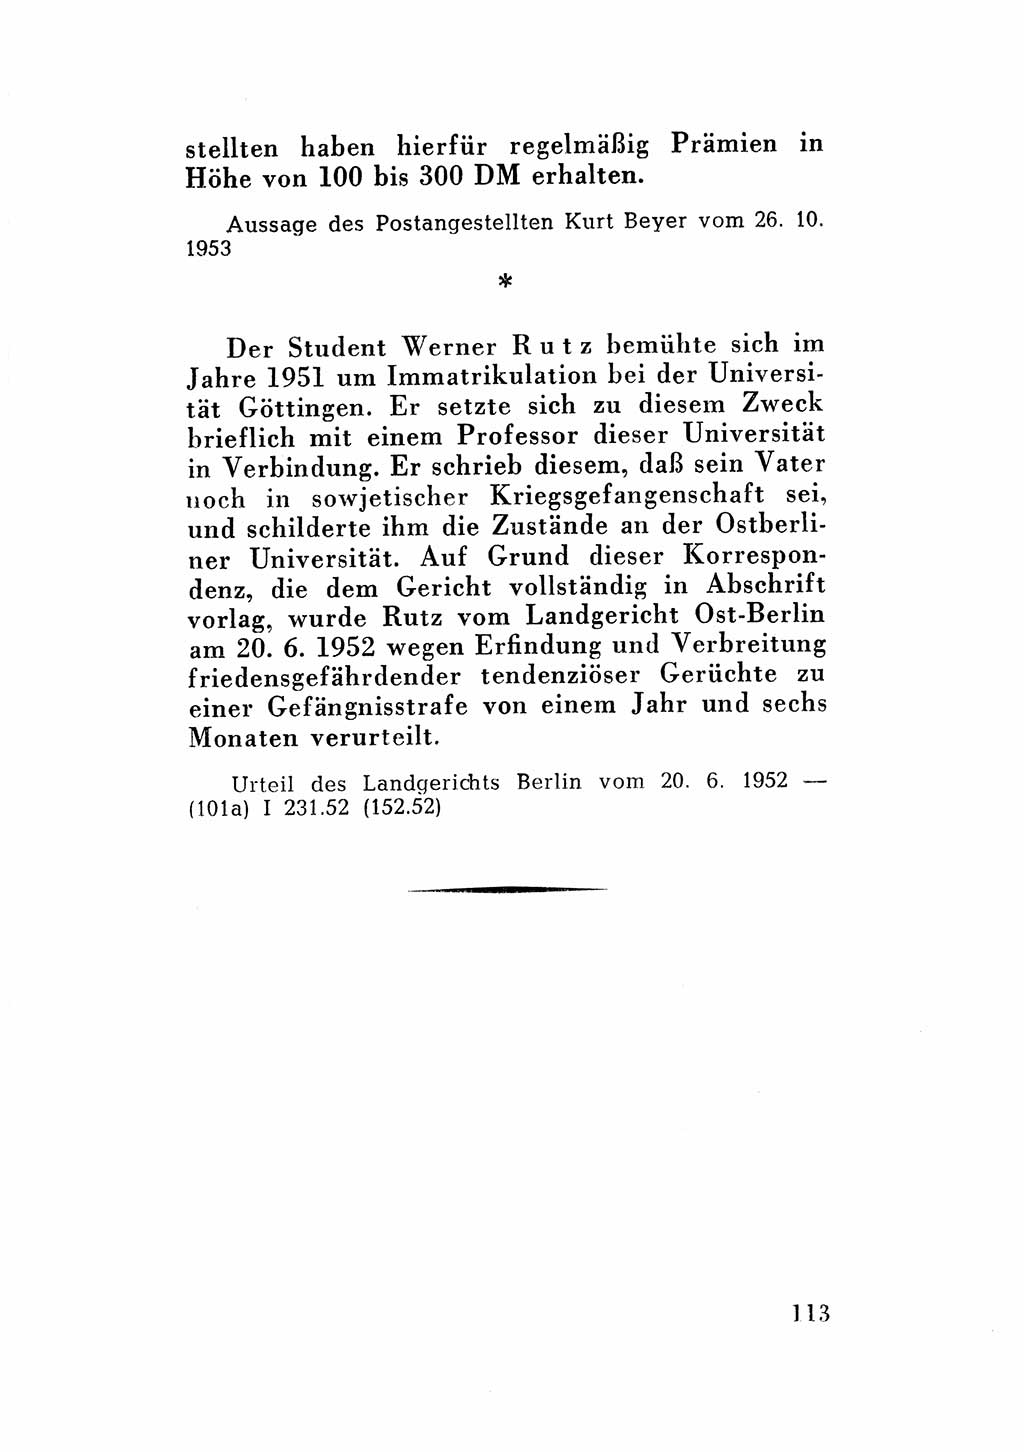 Katalog des Unrechts, Untersuchungsausschuß Freiheitlicher Juristen (UfJ) [Bundesrepublik Deutschland (BRD)] 1956, Seite 113 (Kat. UnR. UfJ BRD 1956, S. 113)